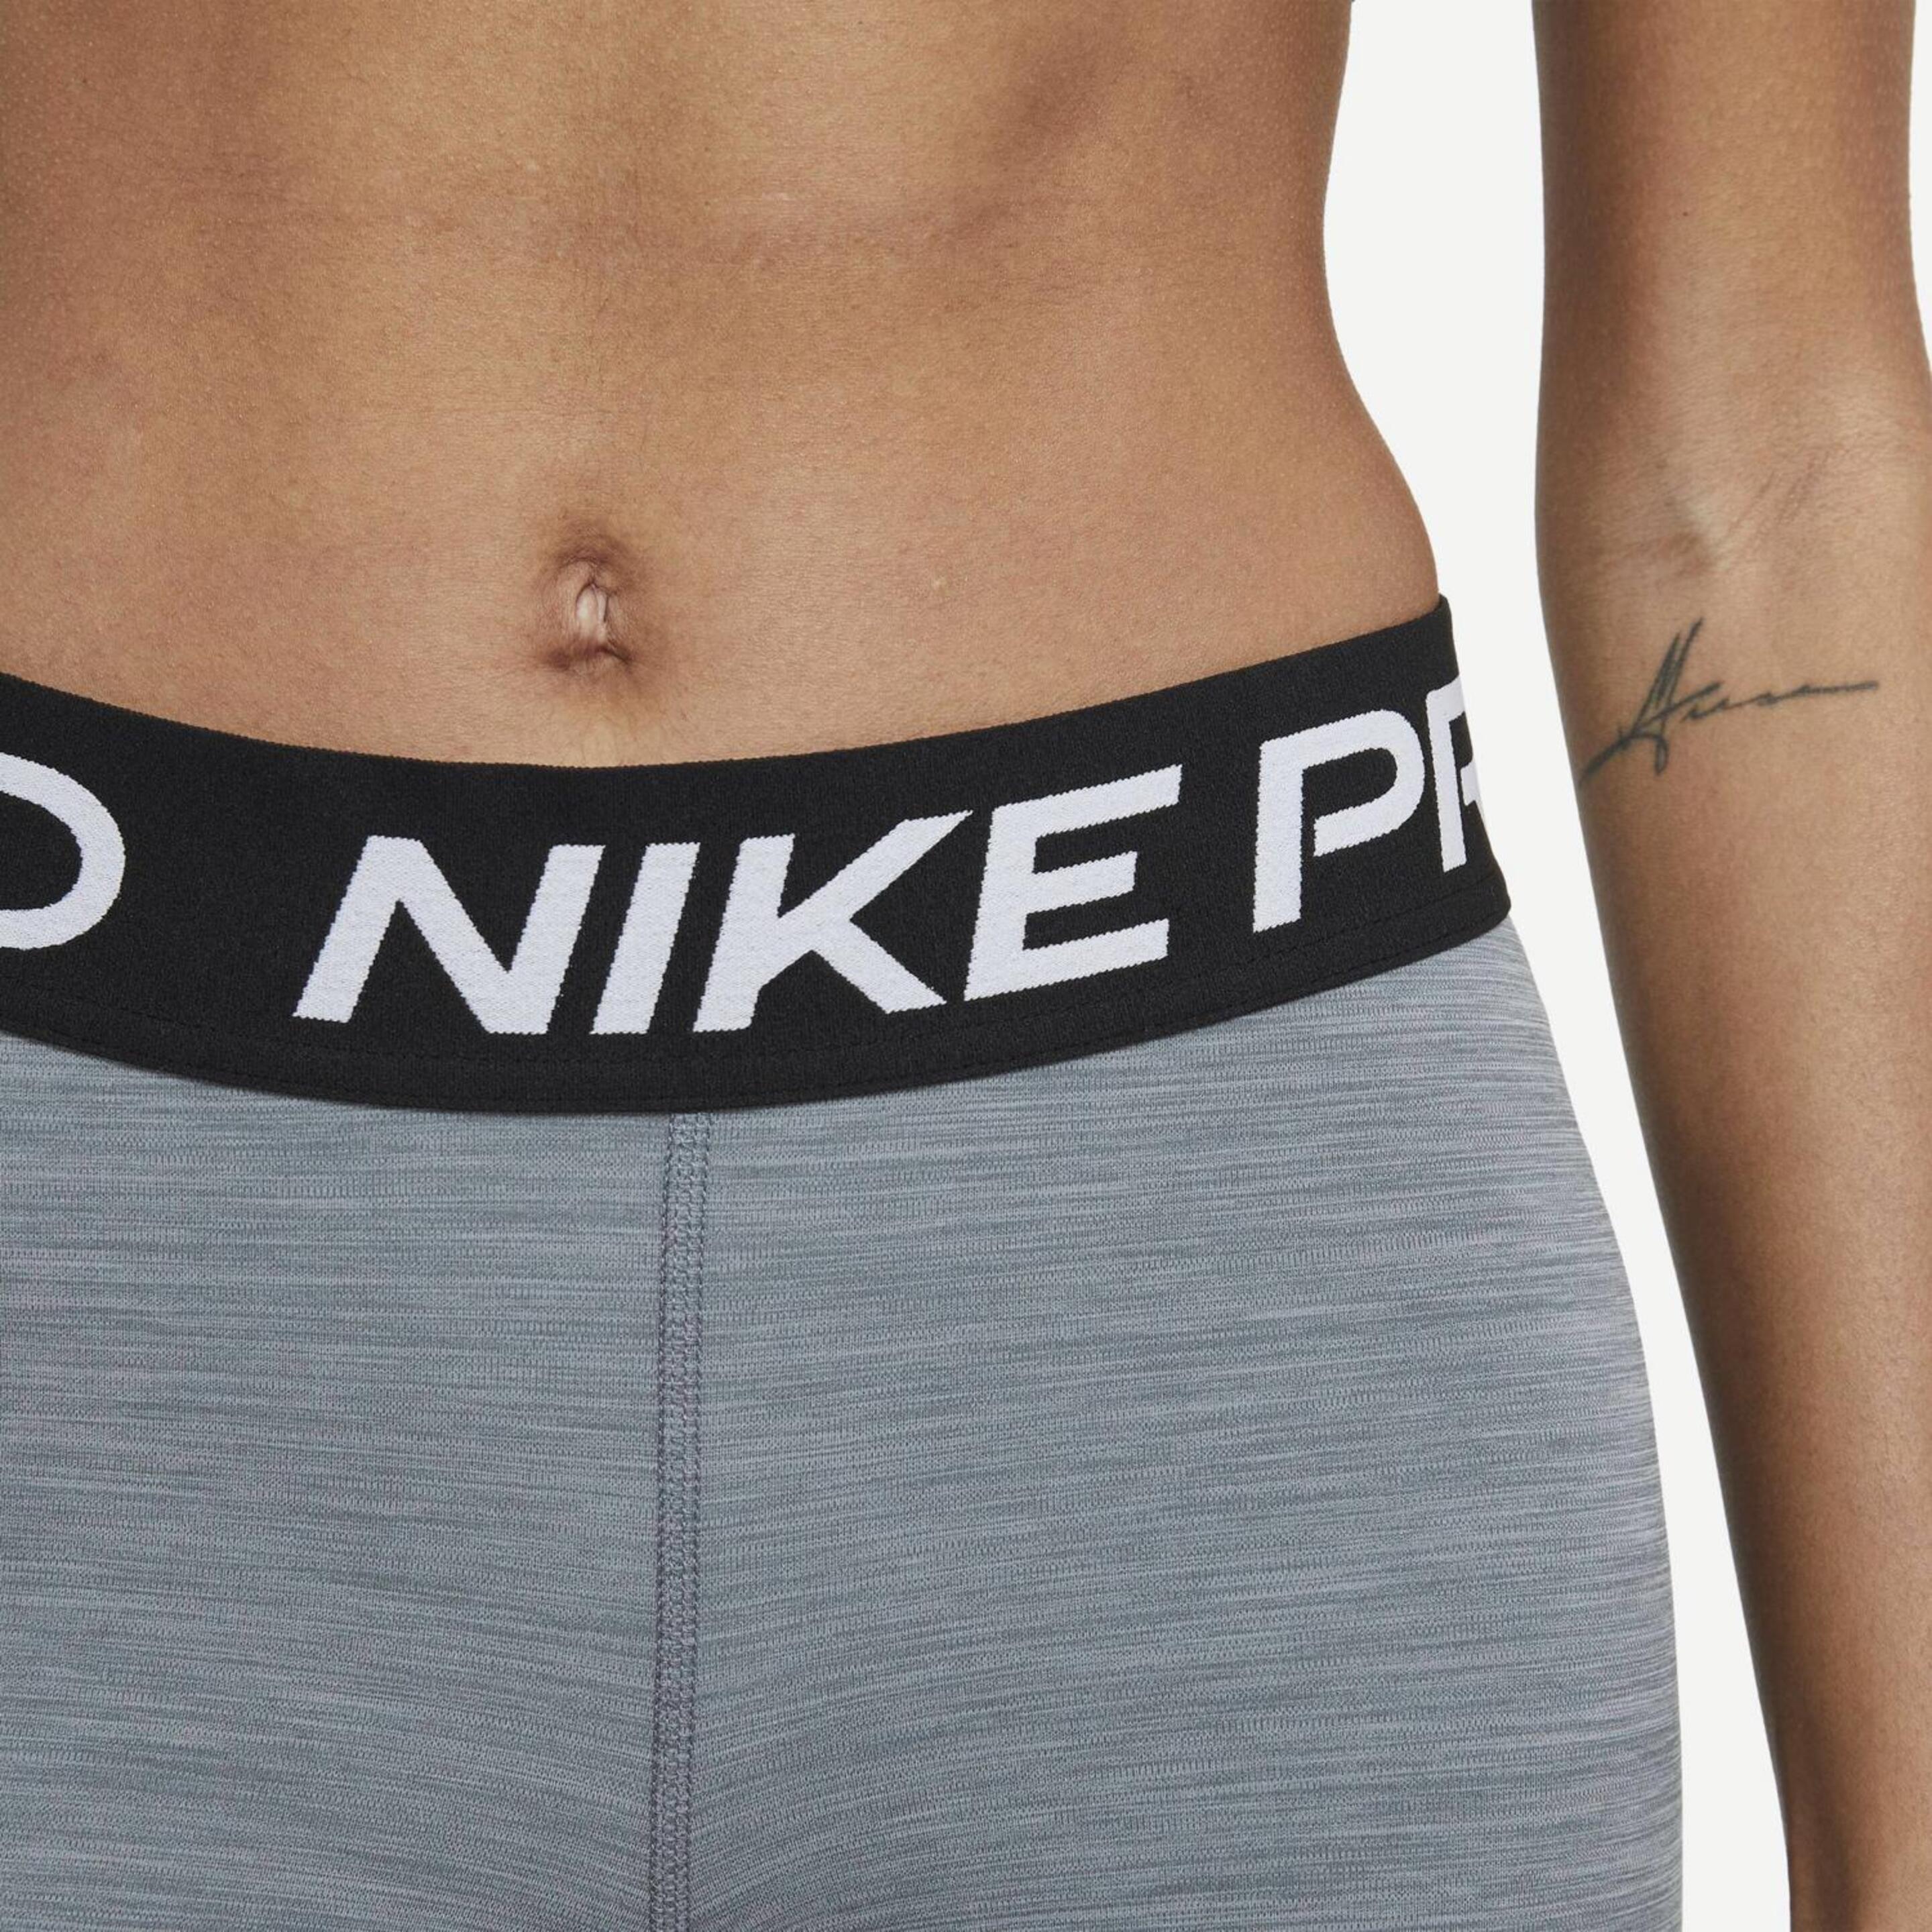 Nike Pro - Gris - Mallas Fitness Cortas Mujer